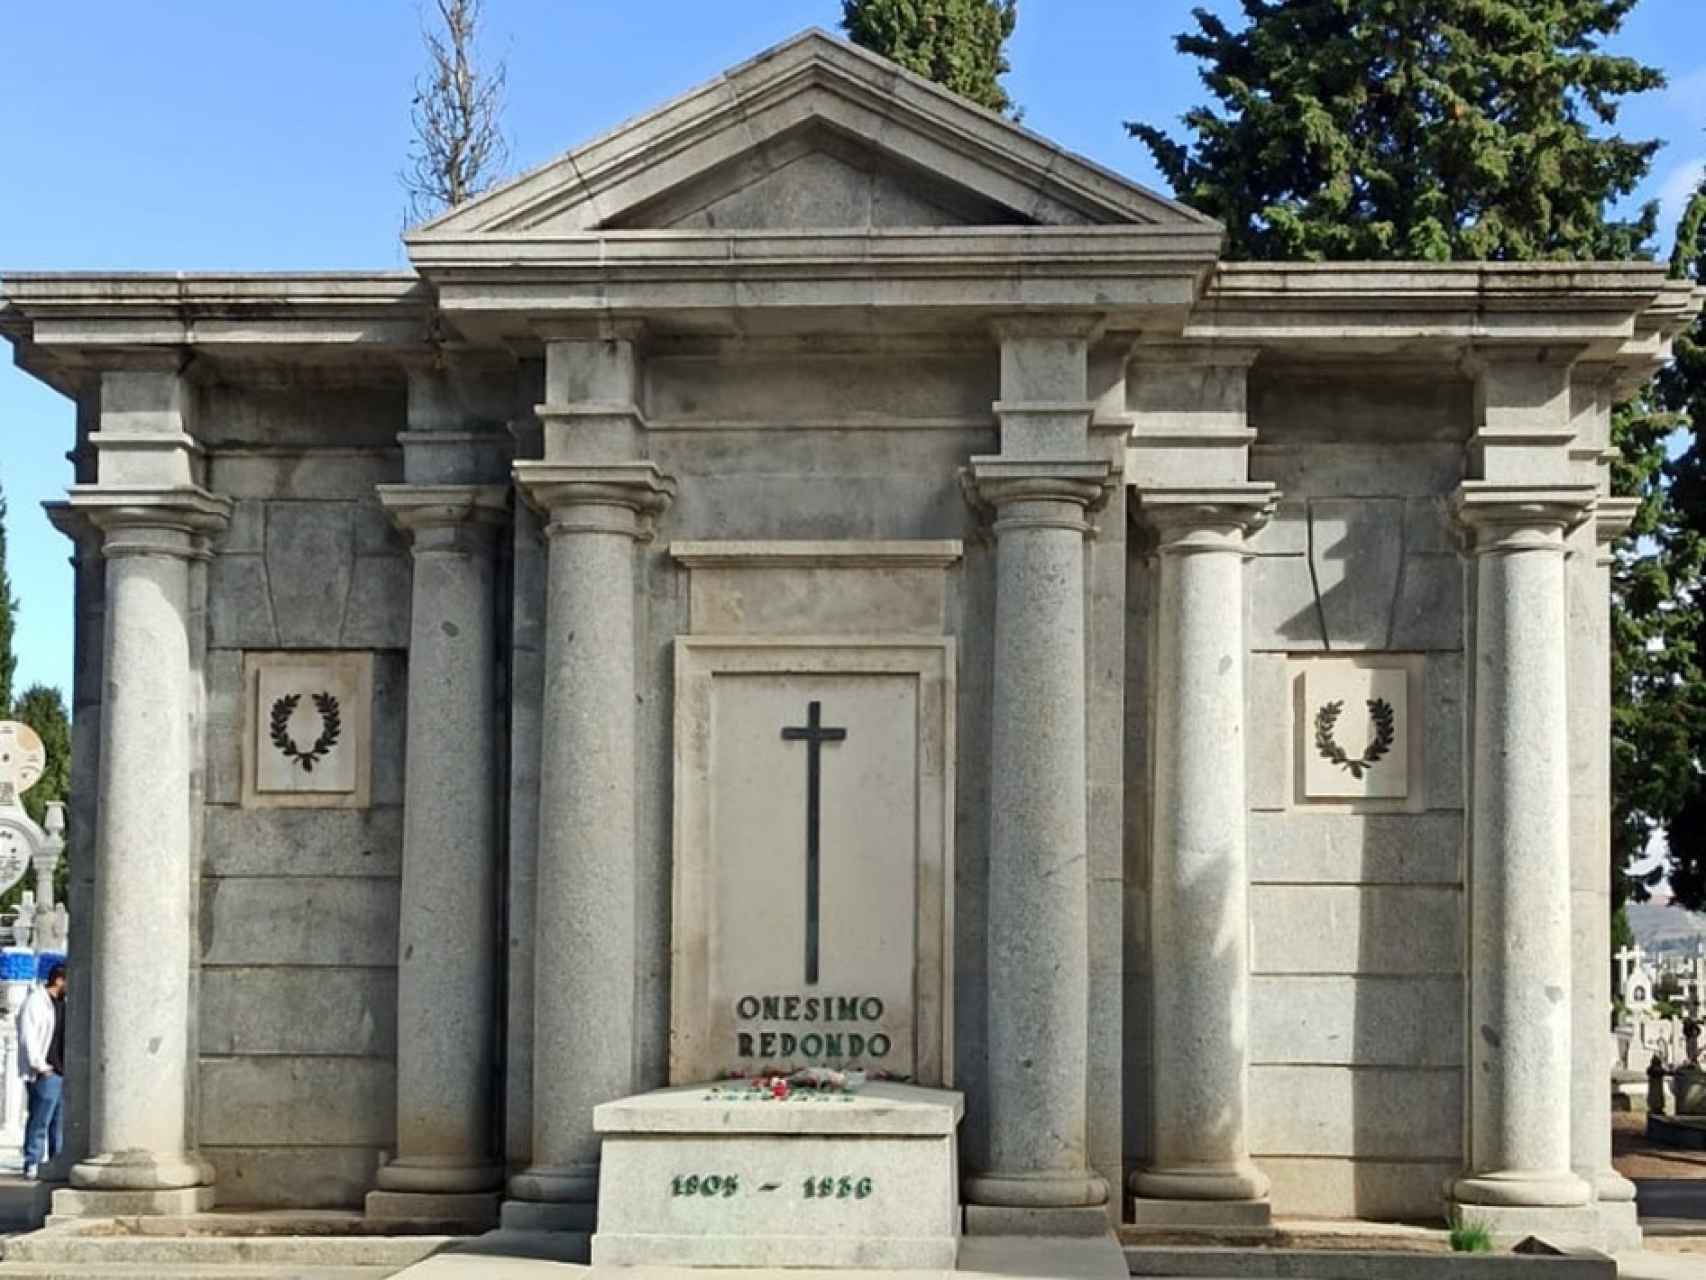 El mausoleo de Onésimo Redondo en el Cementerio de El Carmen de Valladolid.